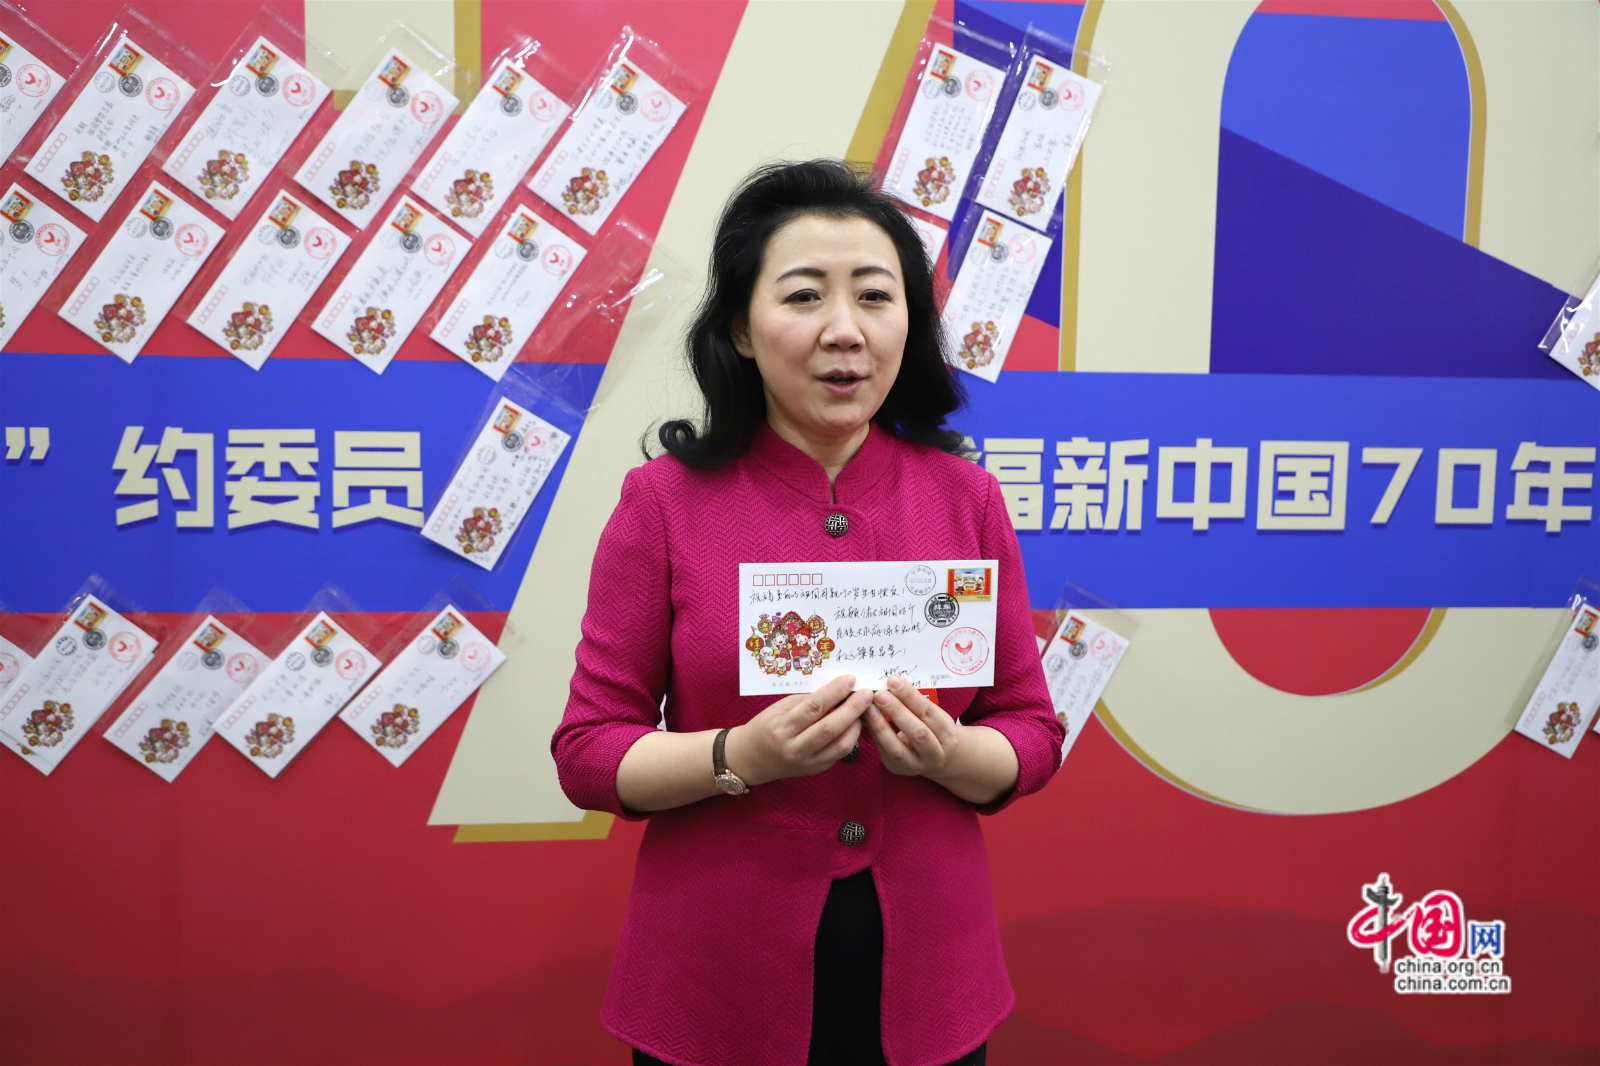 北京市政协委员娜木拉参与节目录制。中国网记者李培刚摄